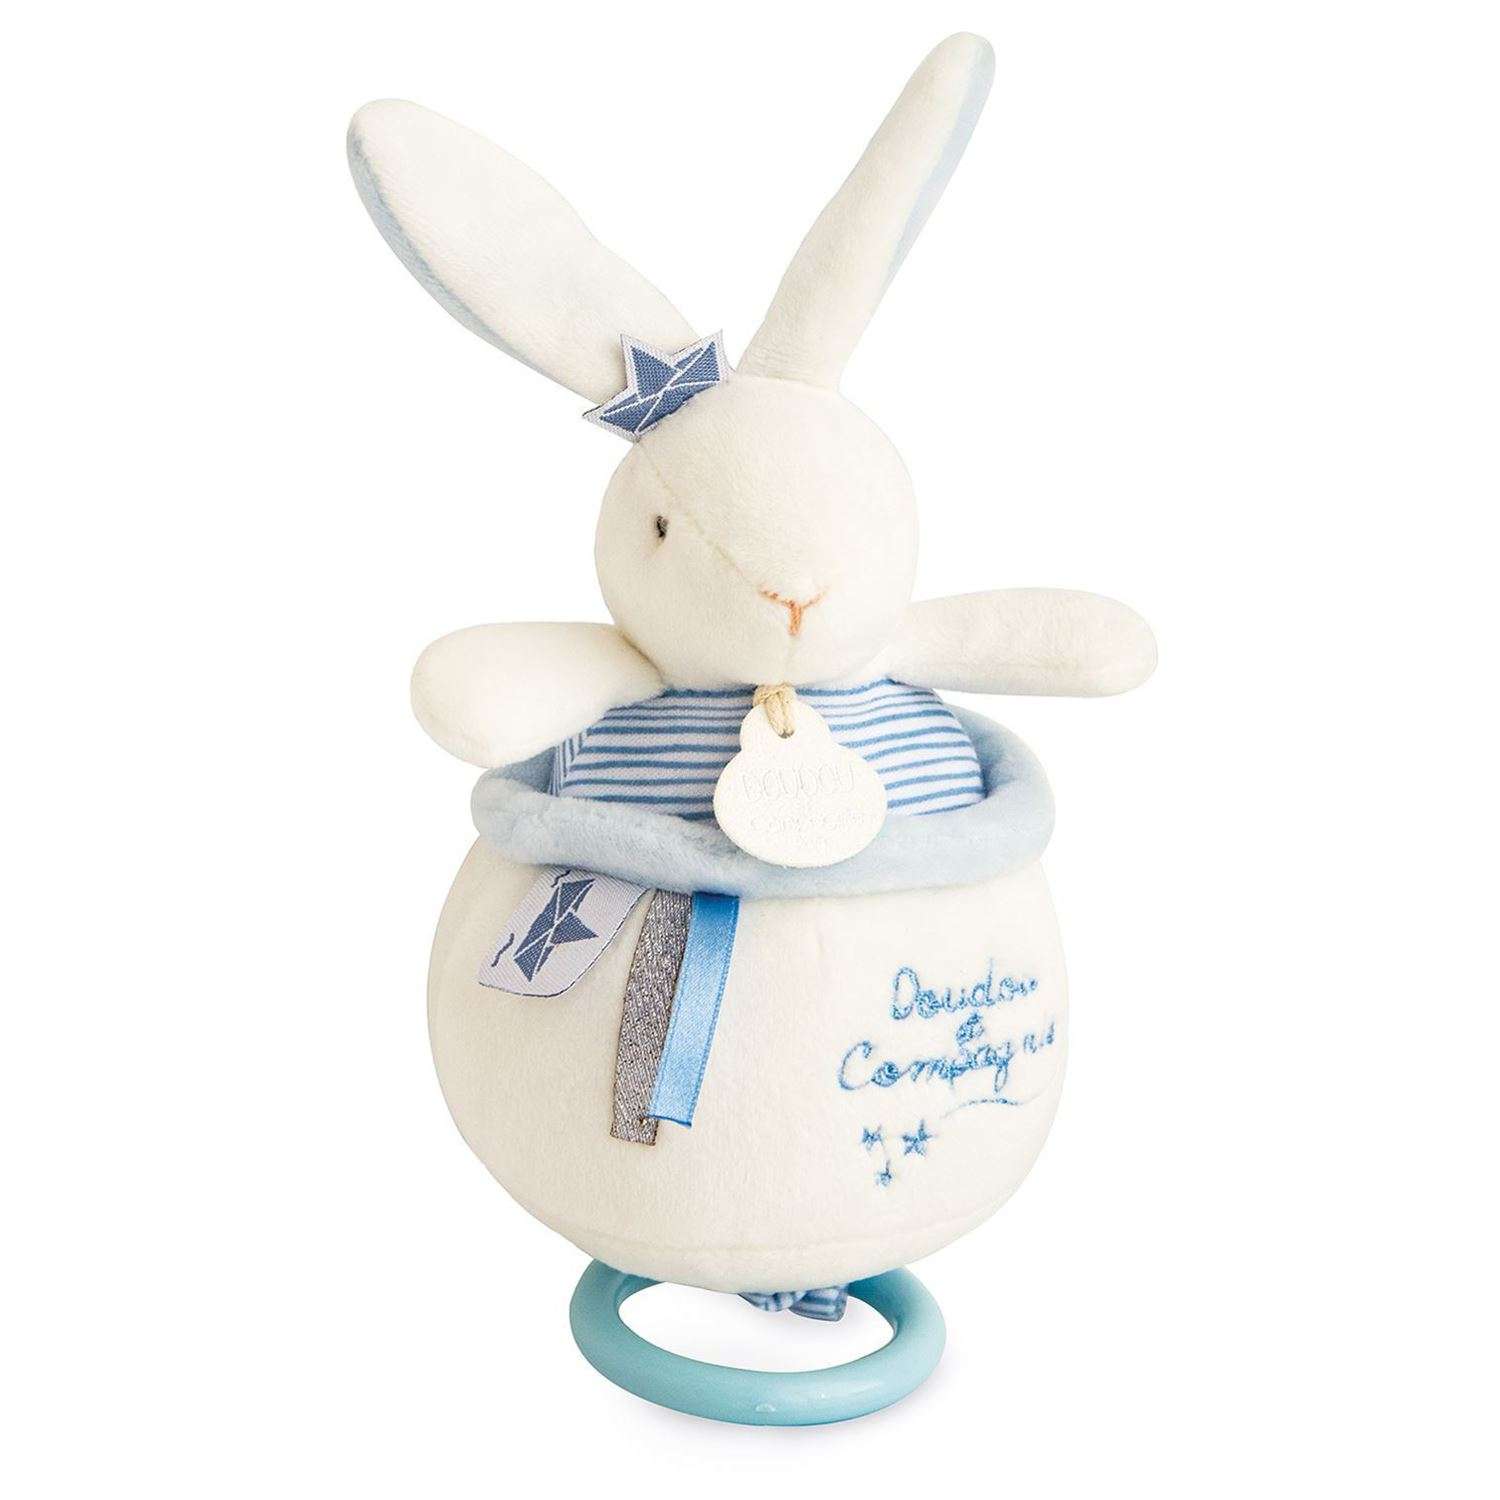 Музыкальная мягкая игрушка Doudou et compagnie  perlidoudou 19 см голубой кролик - фото 2